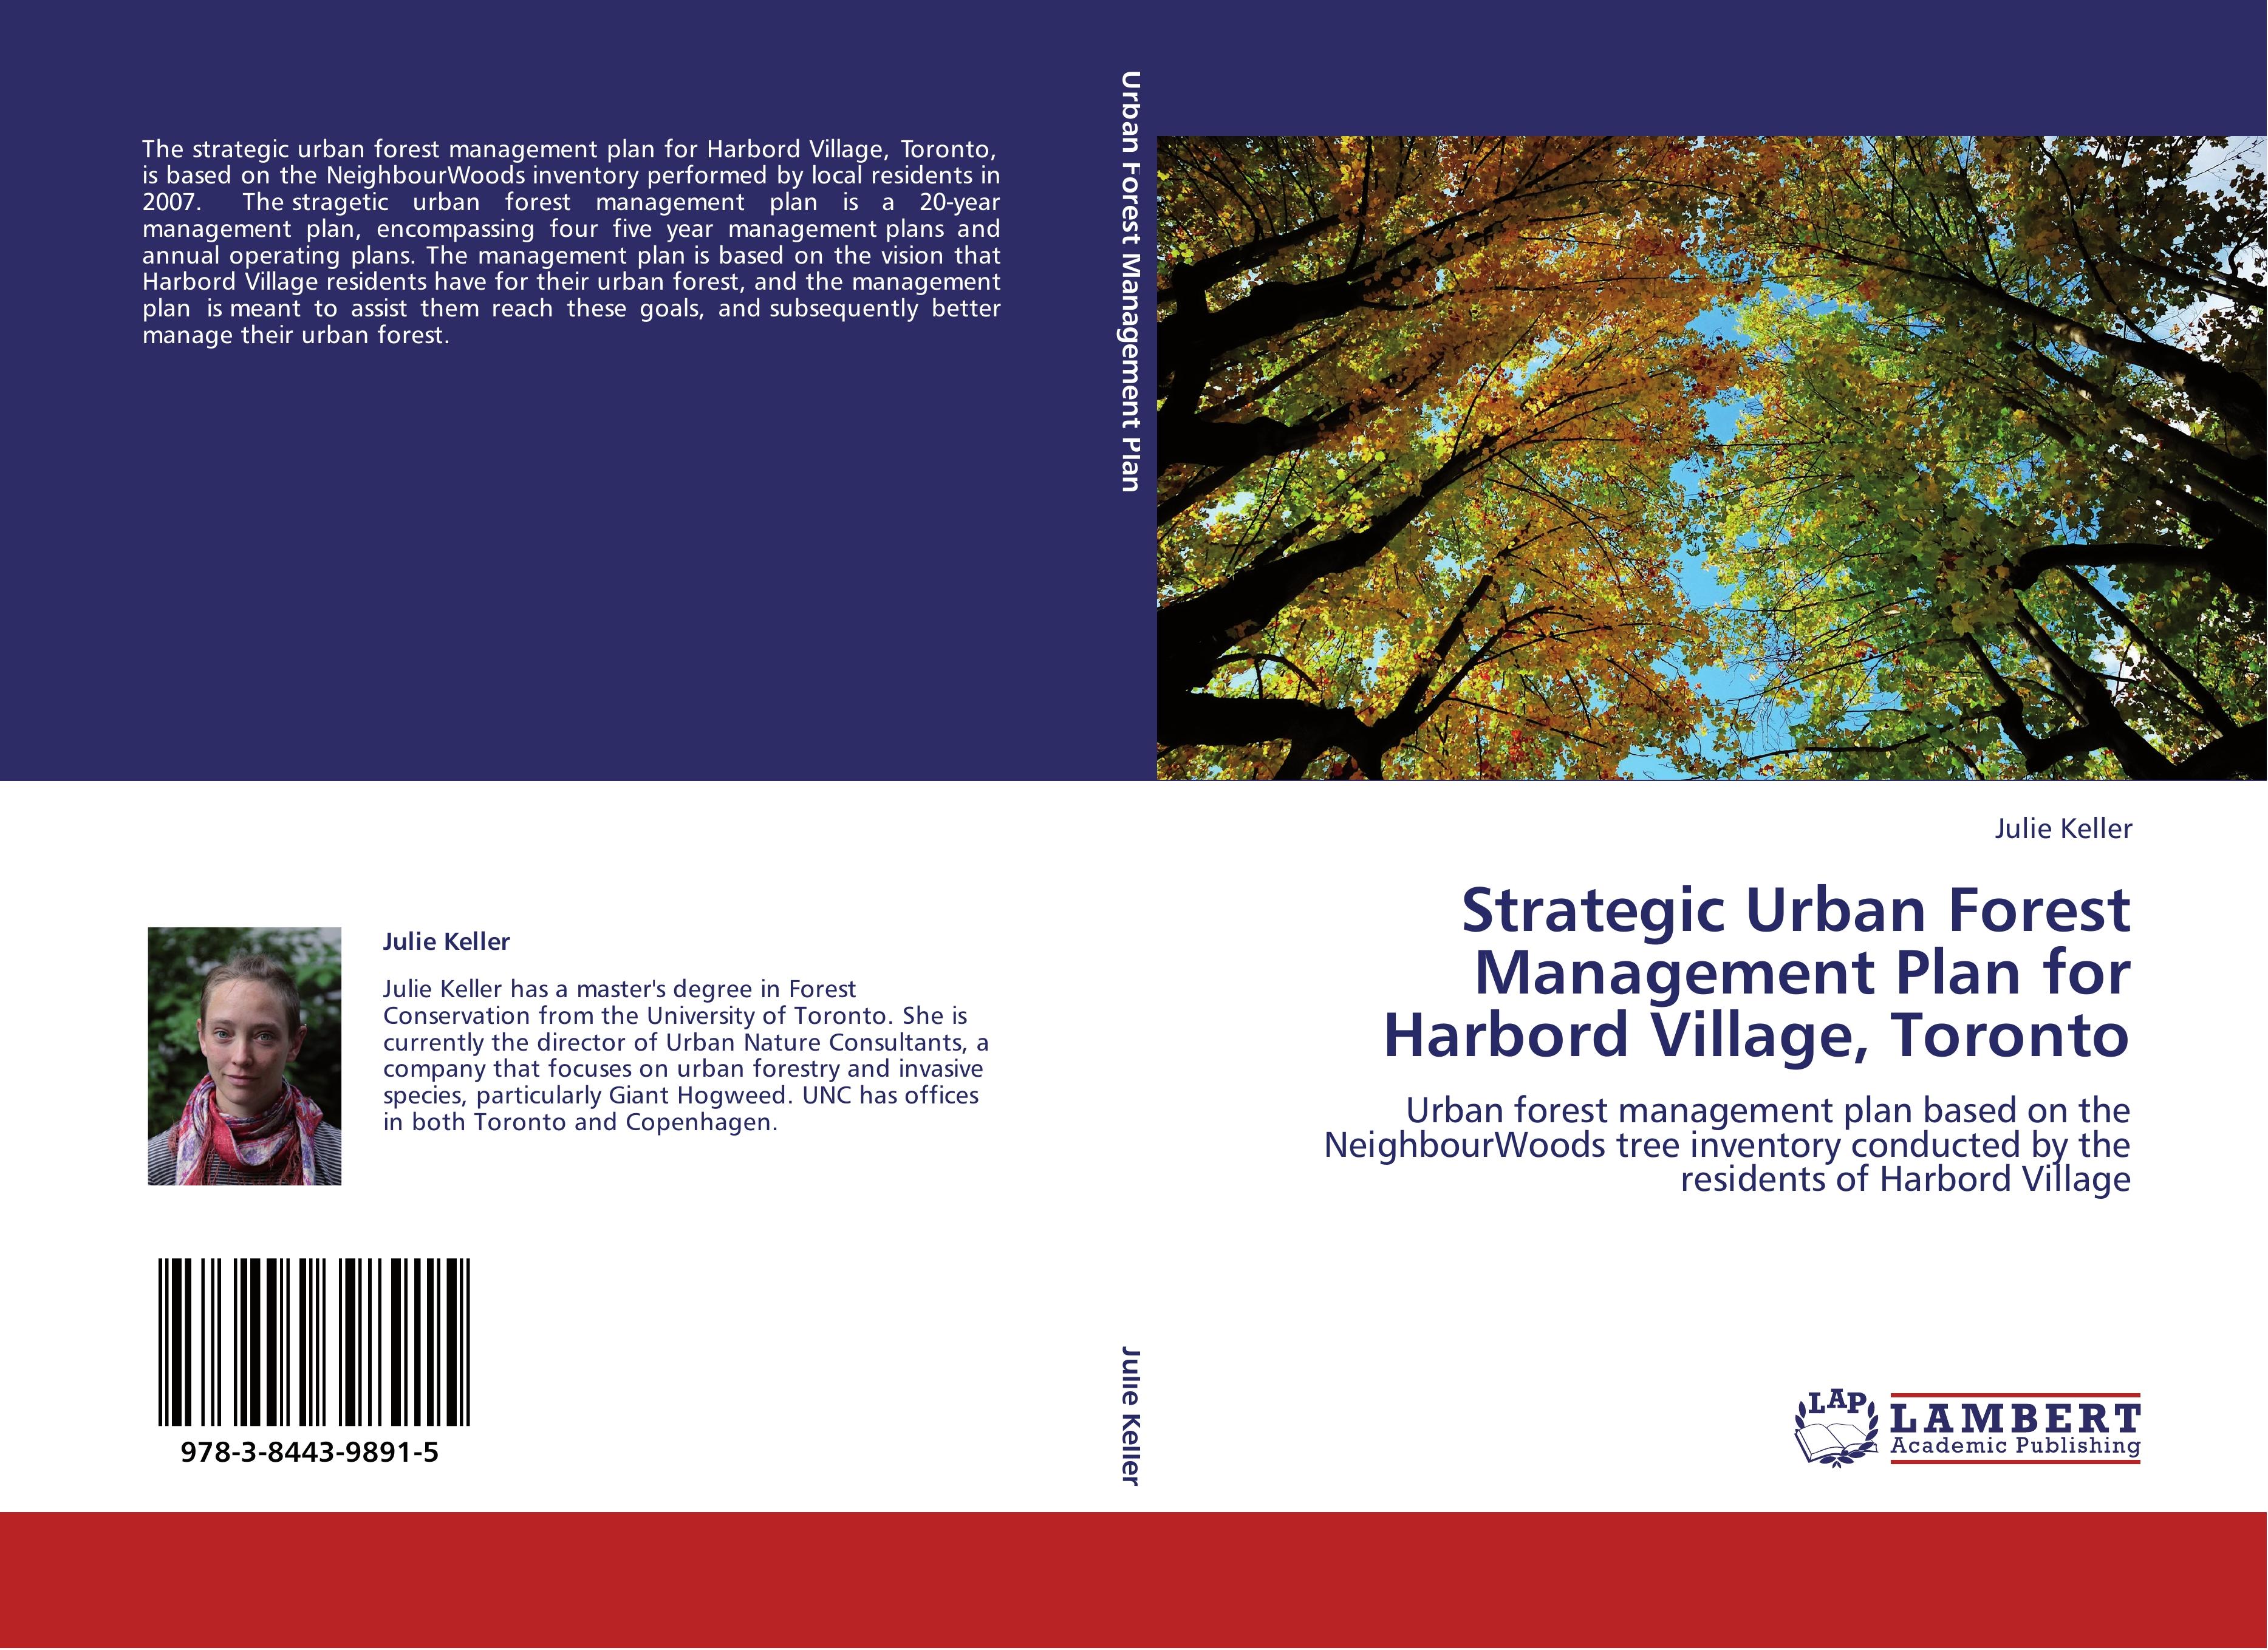 Strategic Urban Forest Management Plan for Harbord Village, Toronto - Julie Keller